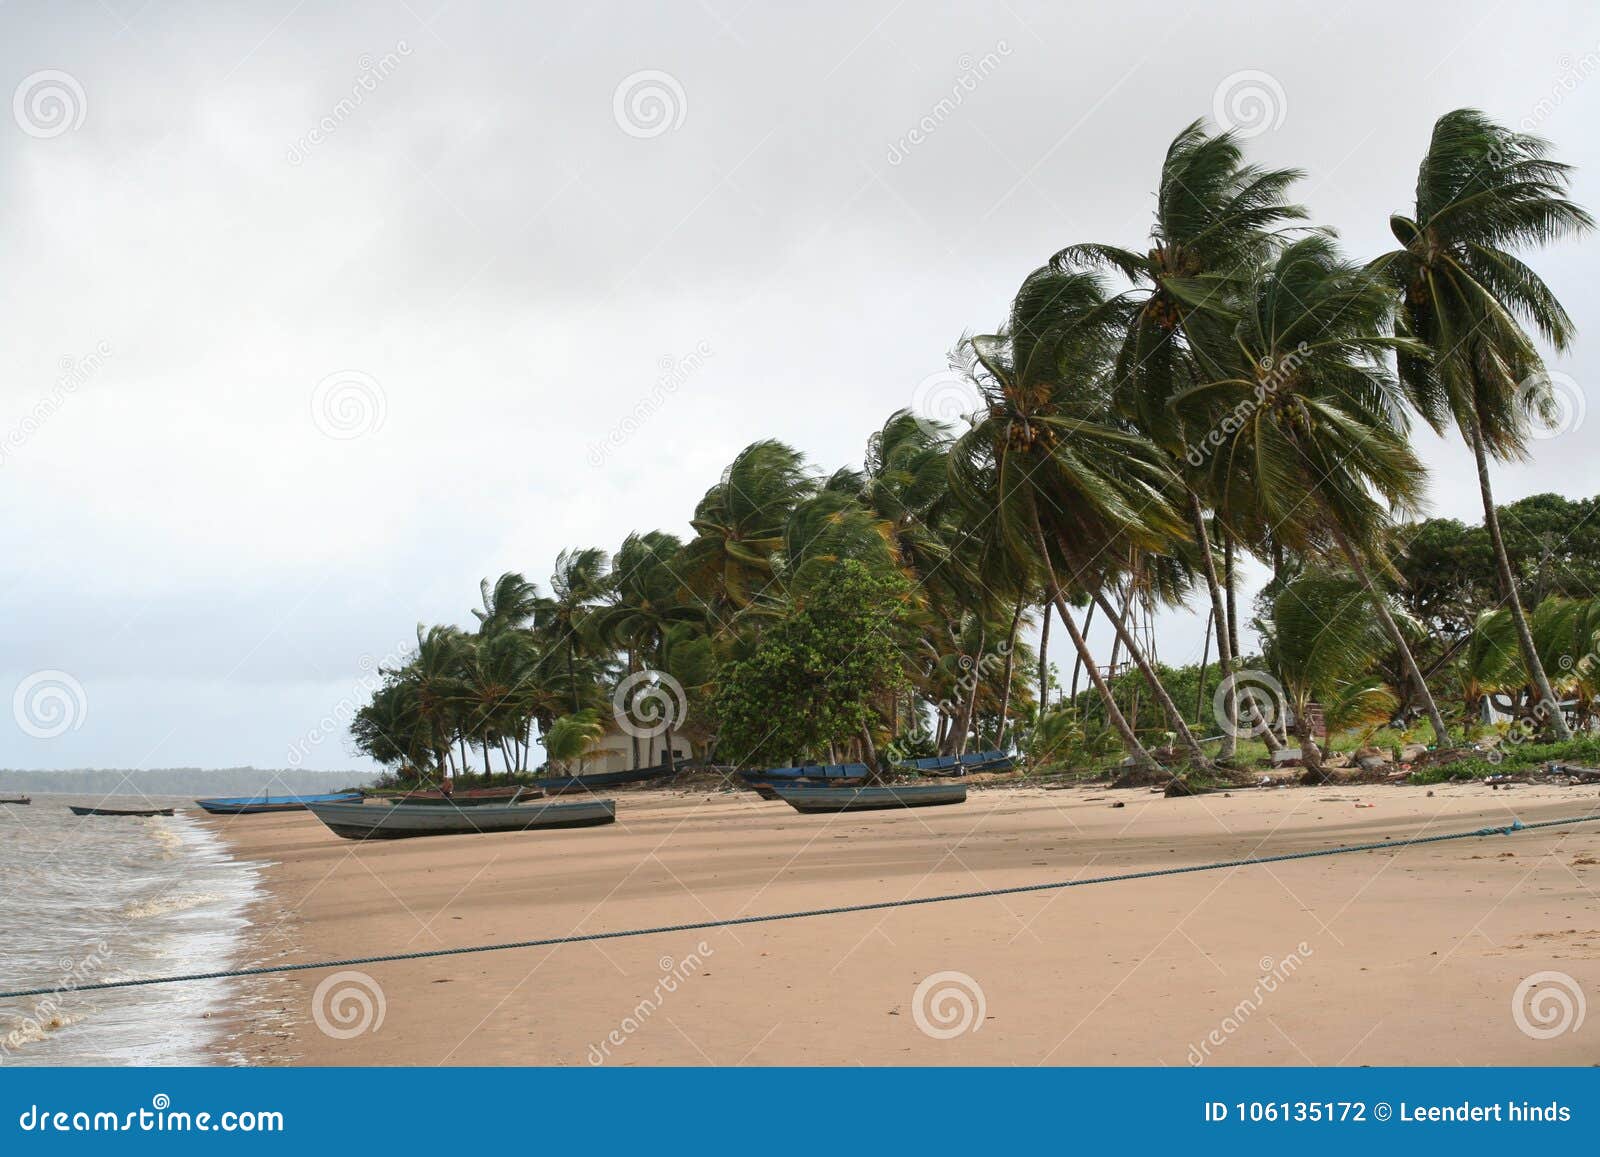 Galibi 1 Суринама. Суринам официально известный как Республика Суринам суверенное государство на северовосточном атлантическом побережье Южной Америки Оно граничится Французскими Гвианами к востоку, Гайаной к западу и Бразилией к югу